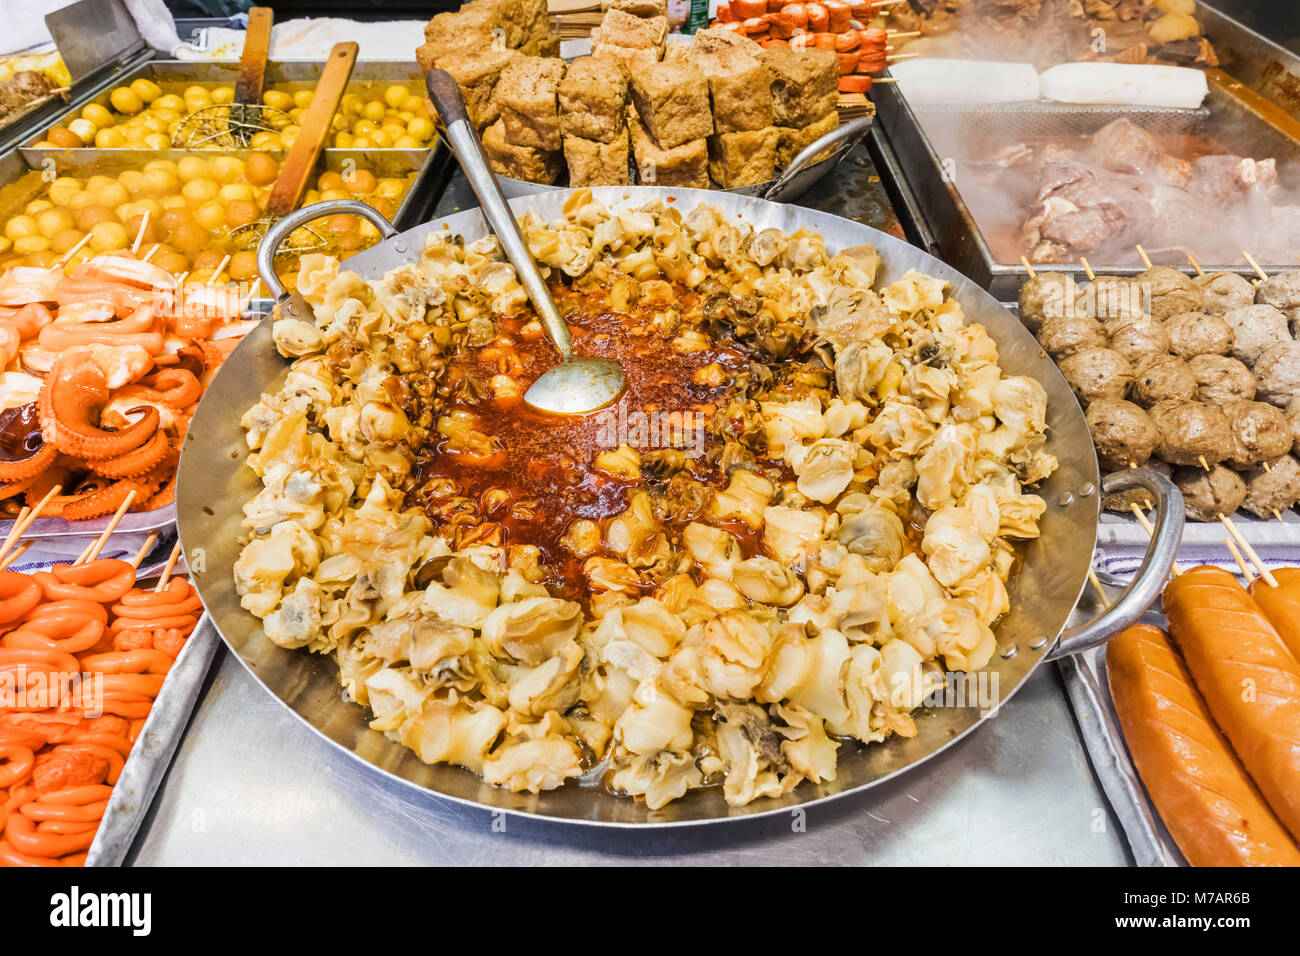 China, Hong Kong, Mong Kok, comida de la calle Foto de stock